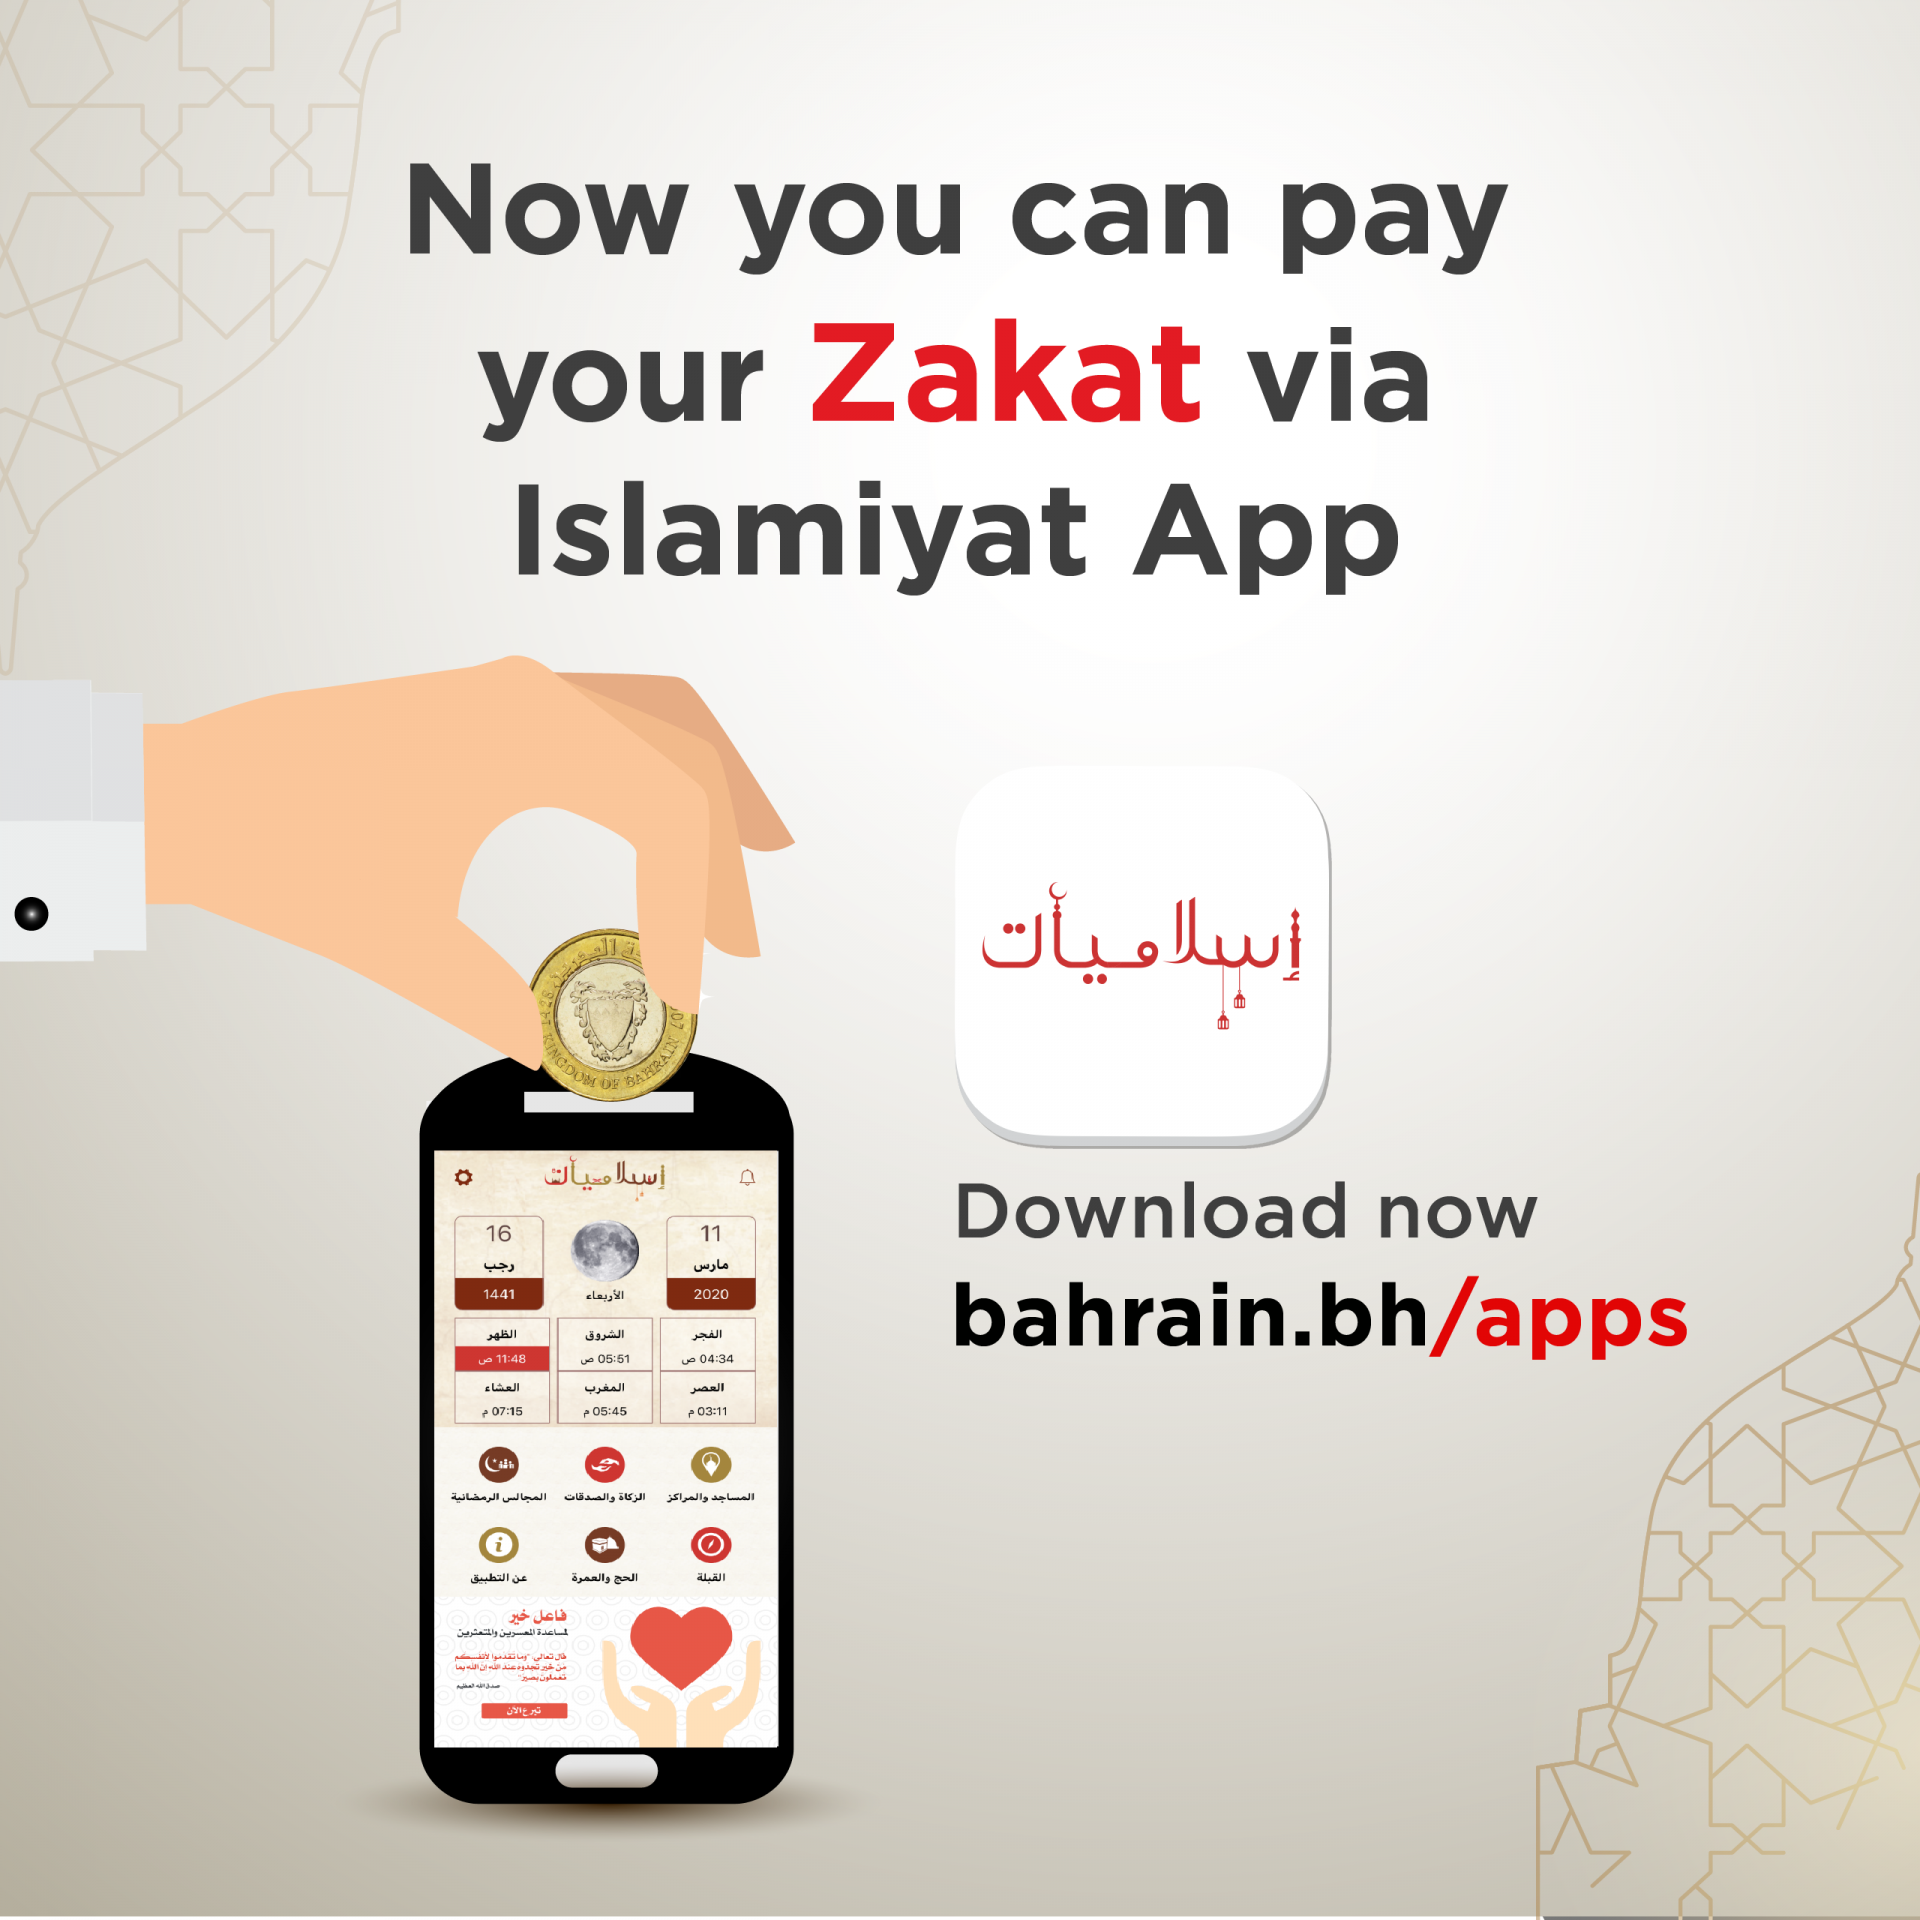 Zakat Islamiyat App